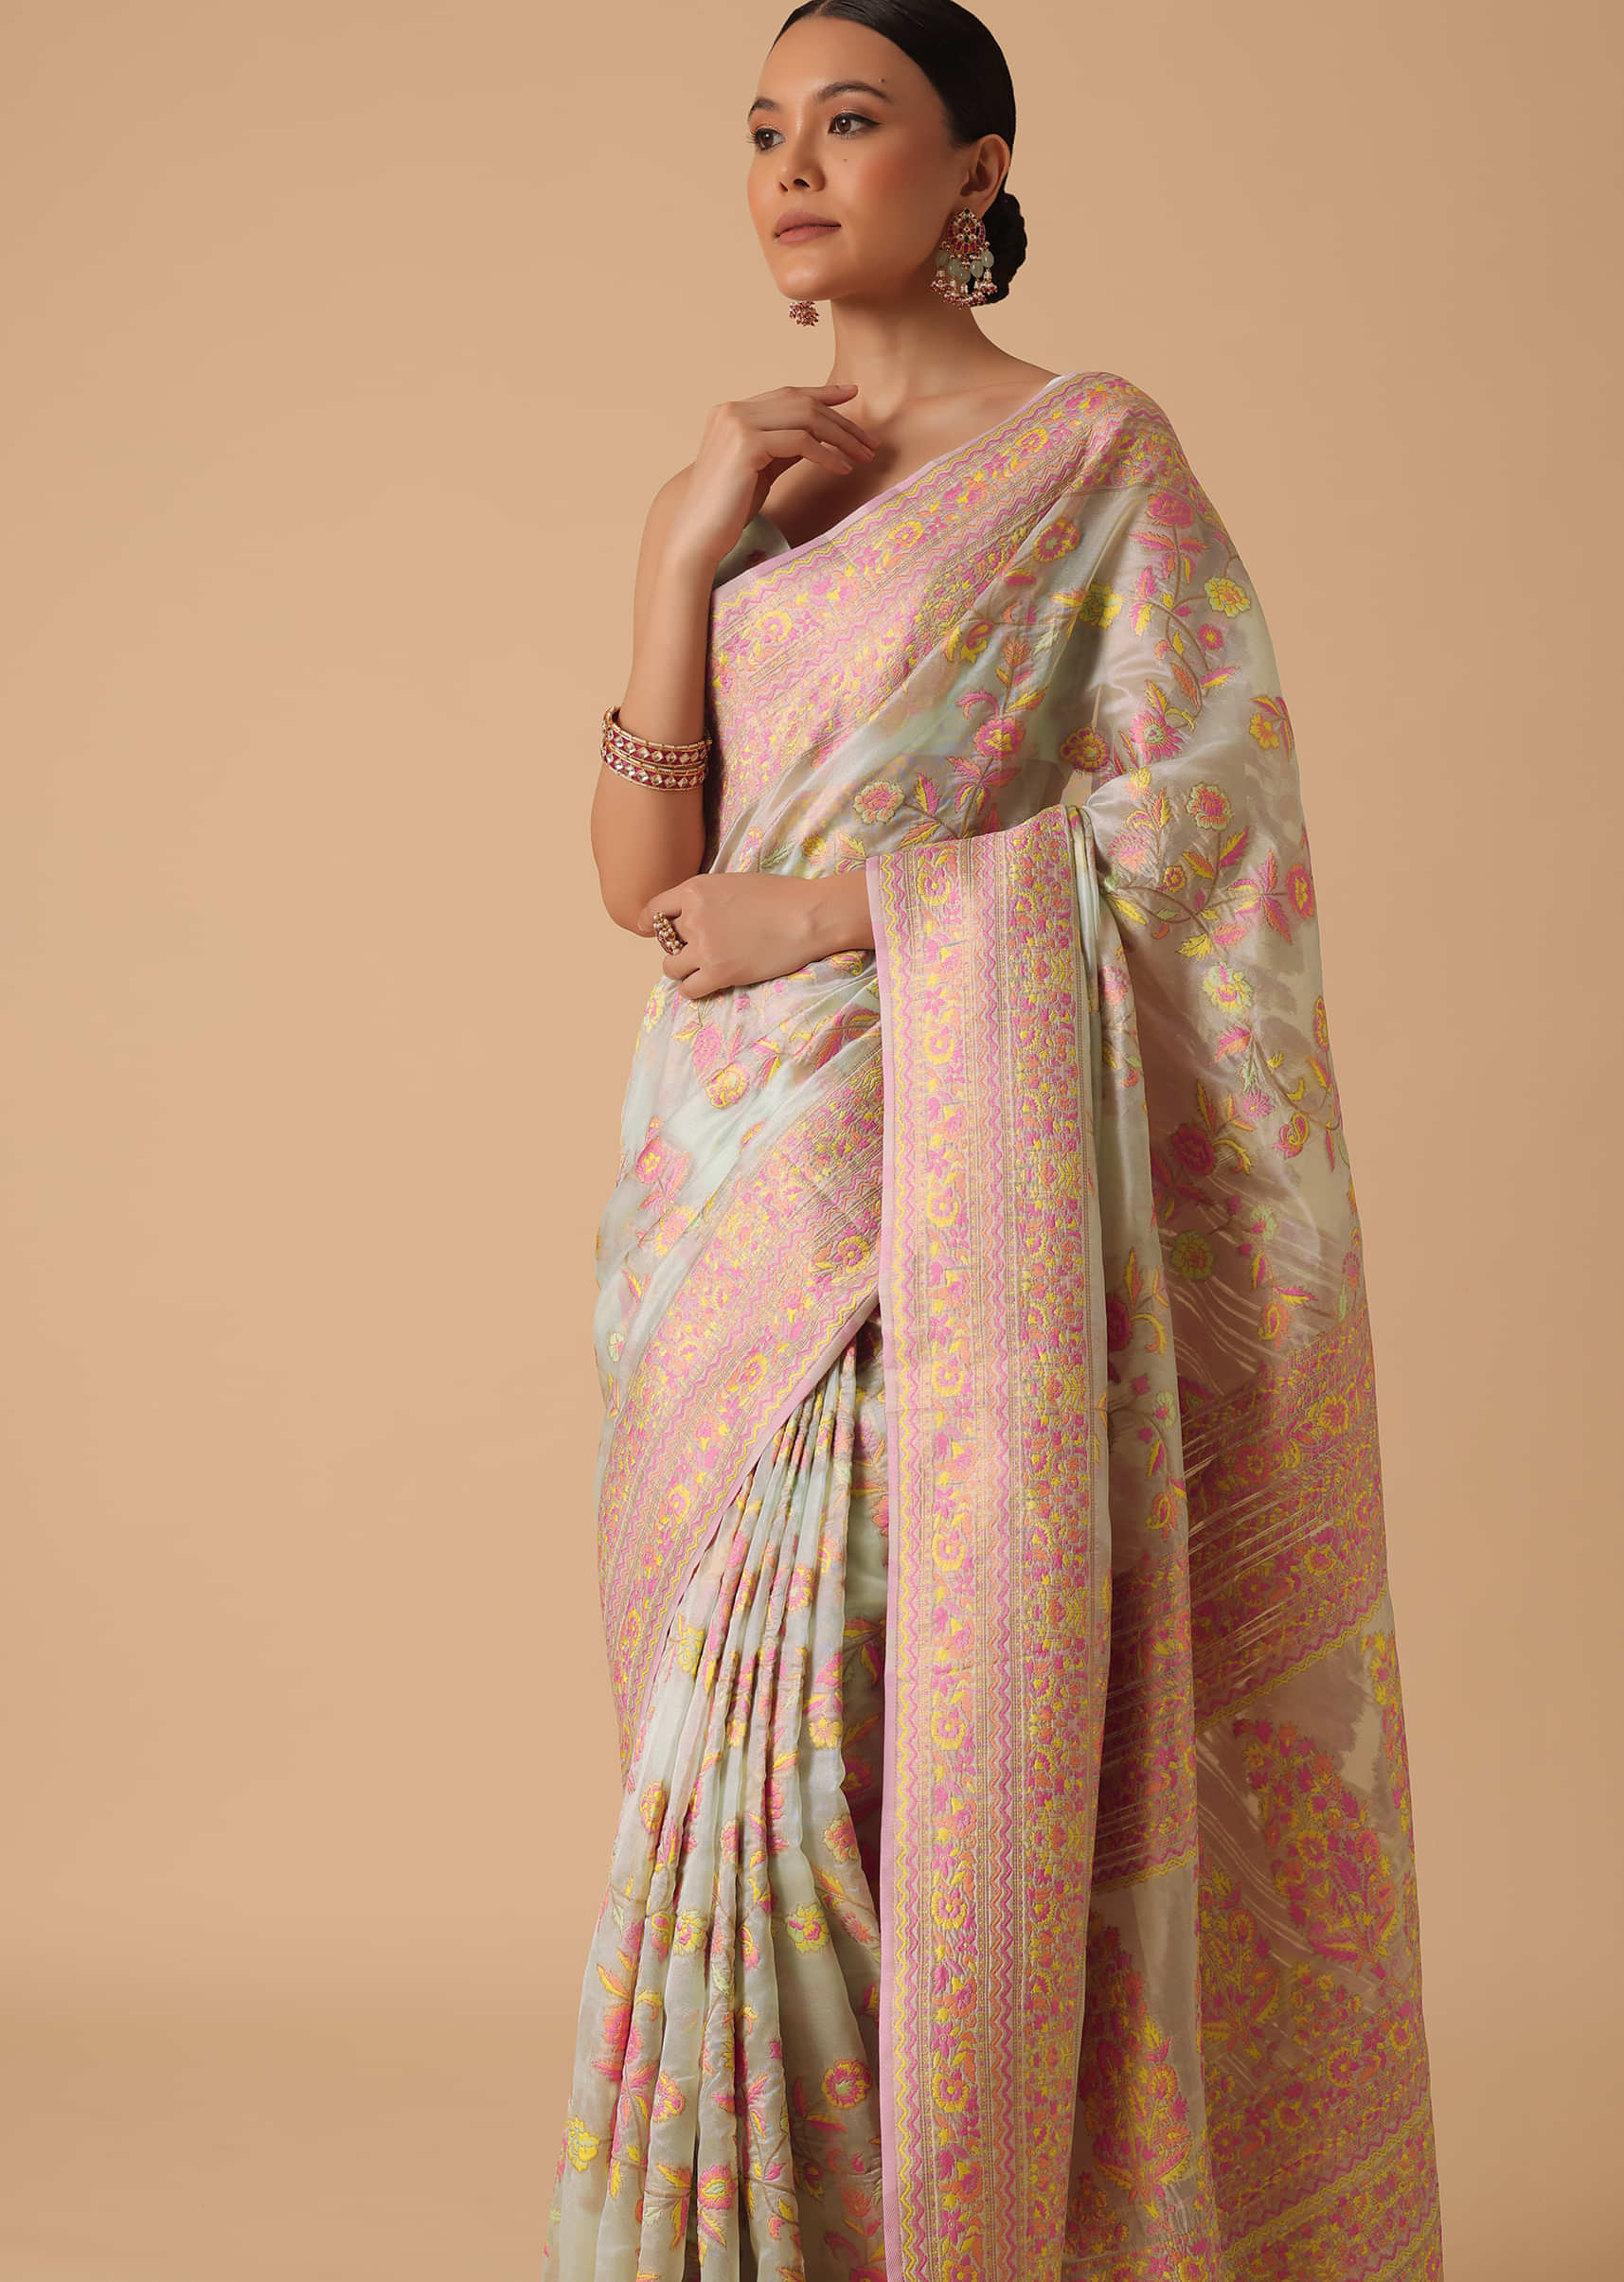 Cotton Sari Wholesale Sari Vintage Sari Antique Sari 6 Meter Cotton Sari Fabric used Sari